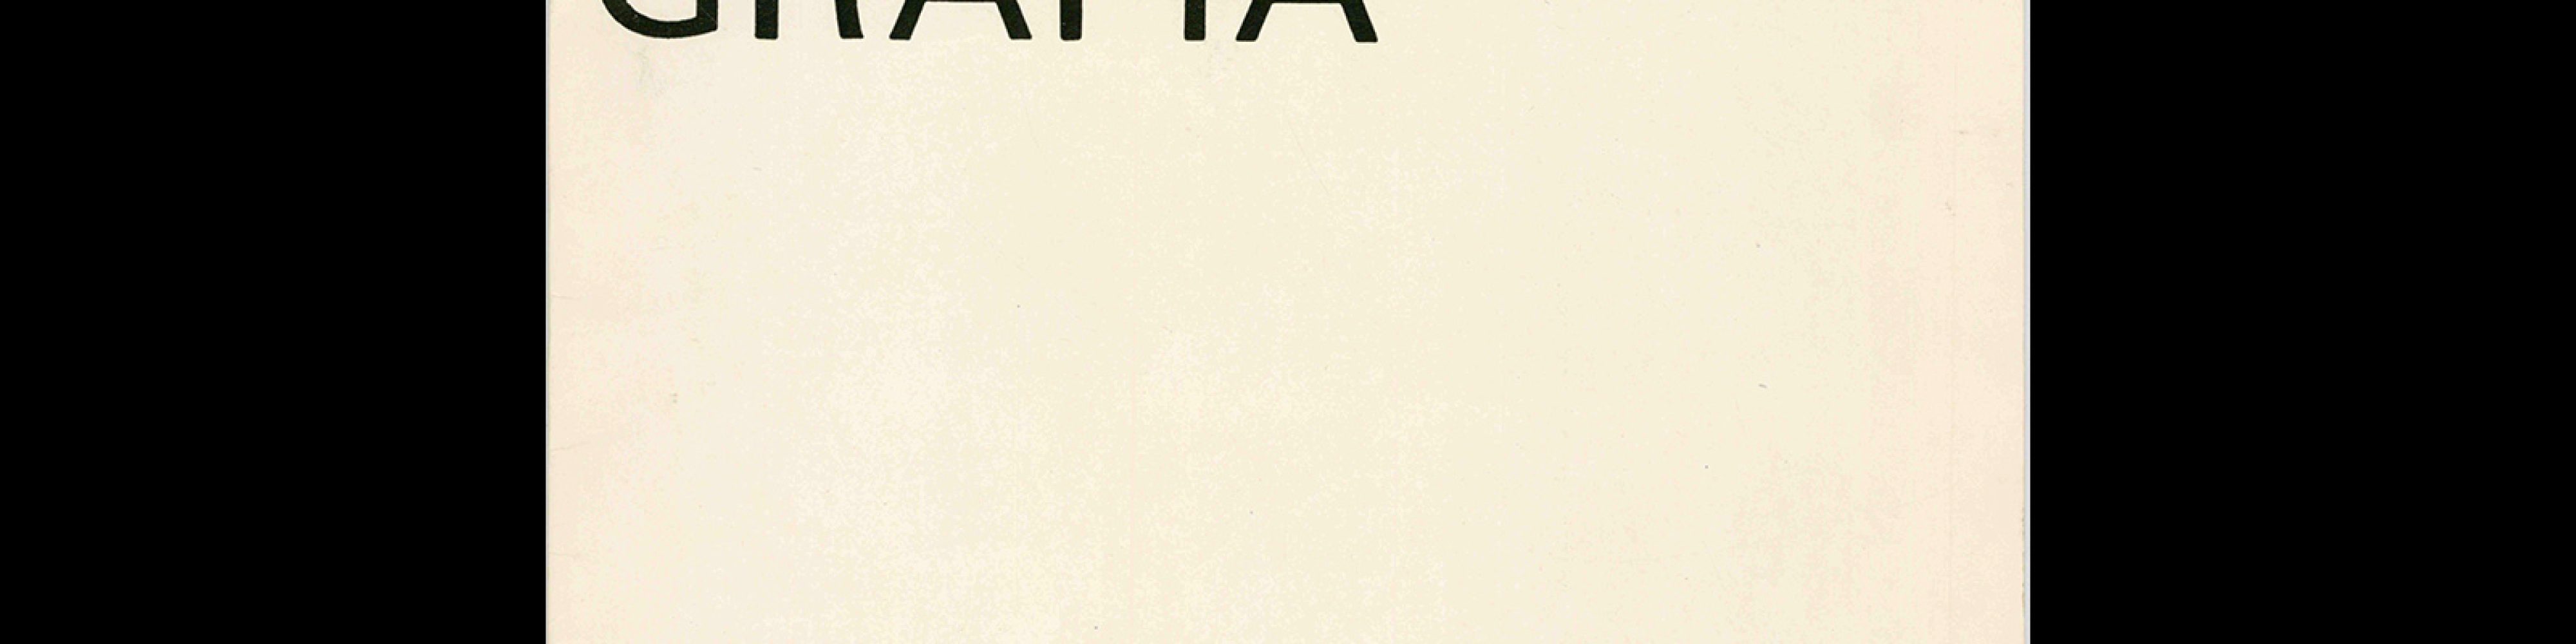 Typografia, ročník 68, 02, 1965 Cover design by Vladimír Janský.